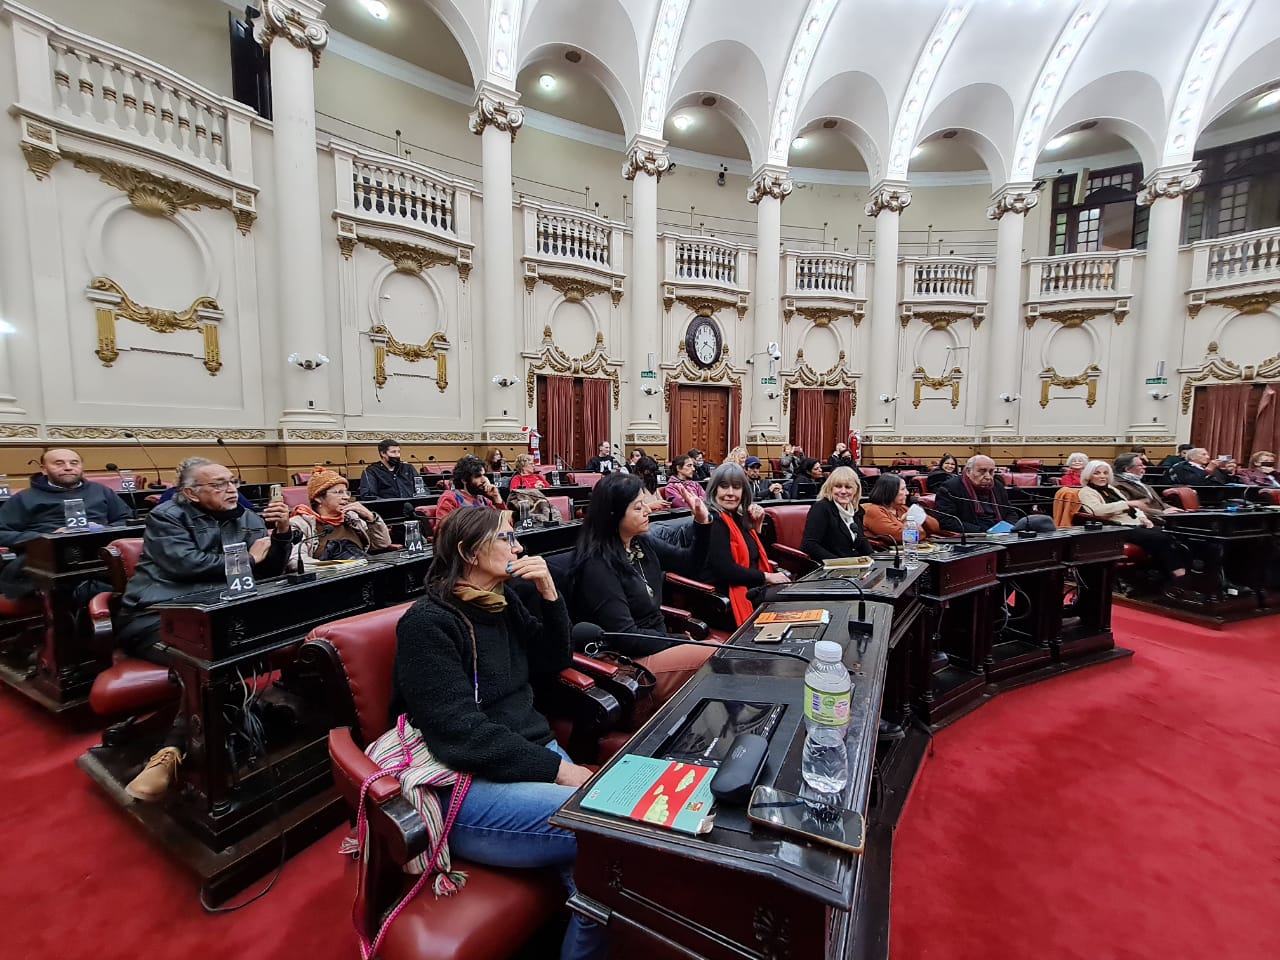 Presentaron la colección “Poetas de Córdoba” en la ex Legislatura